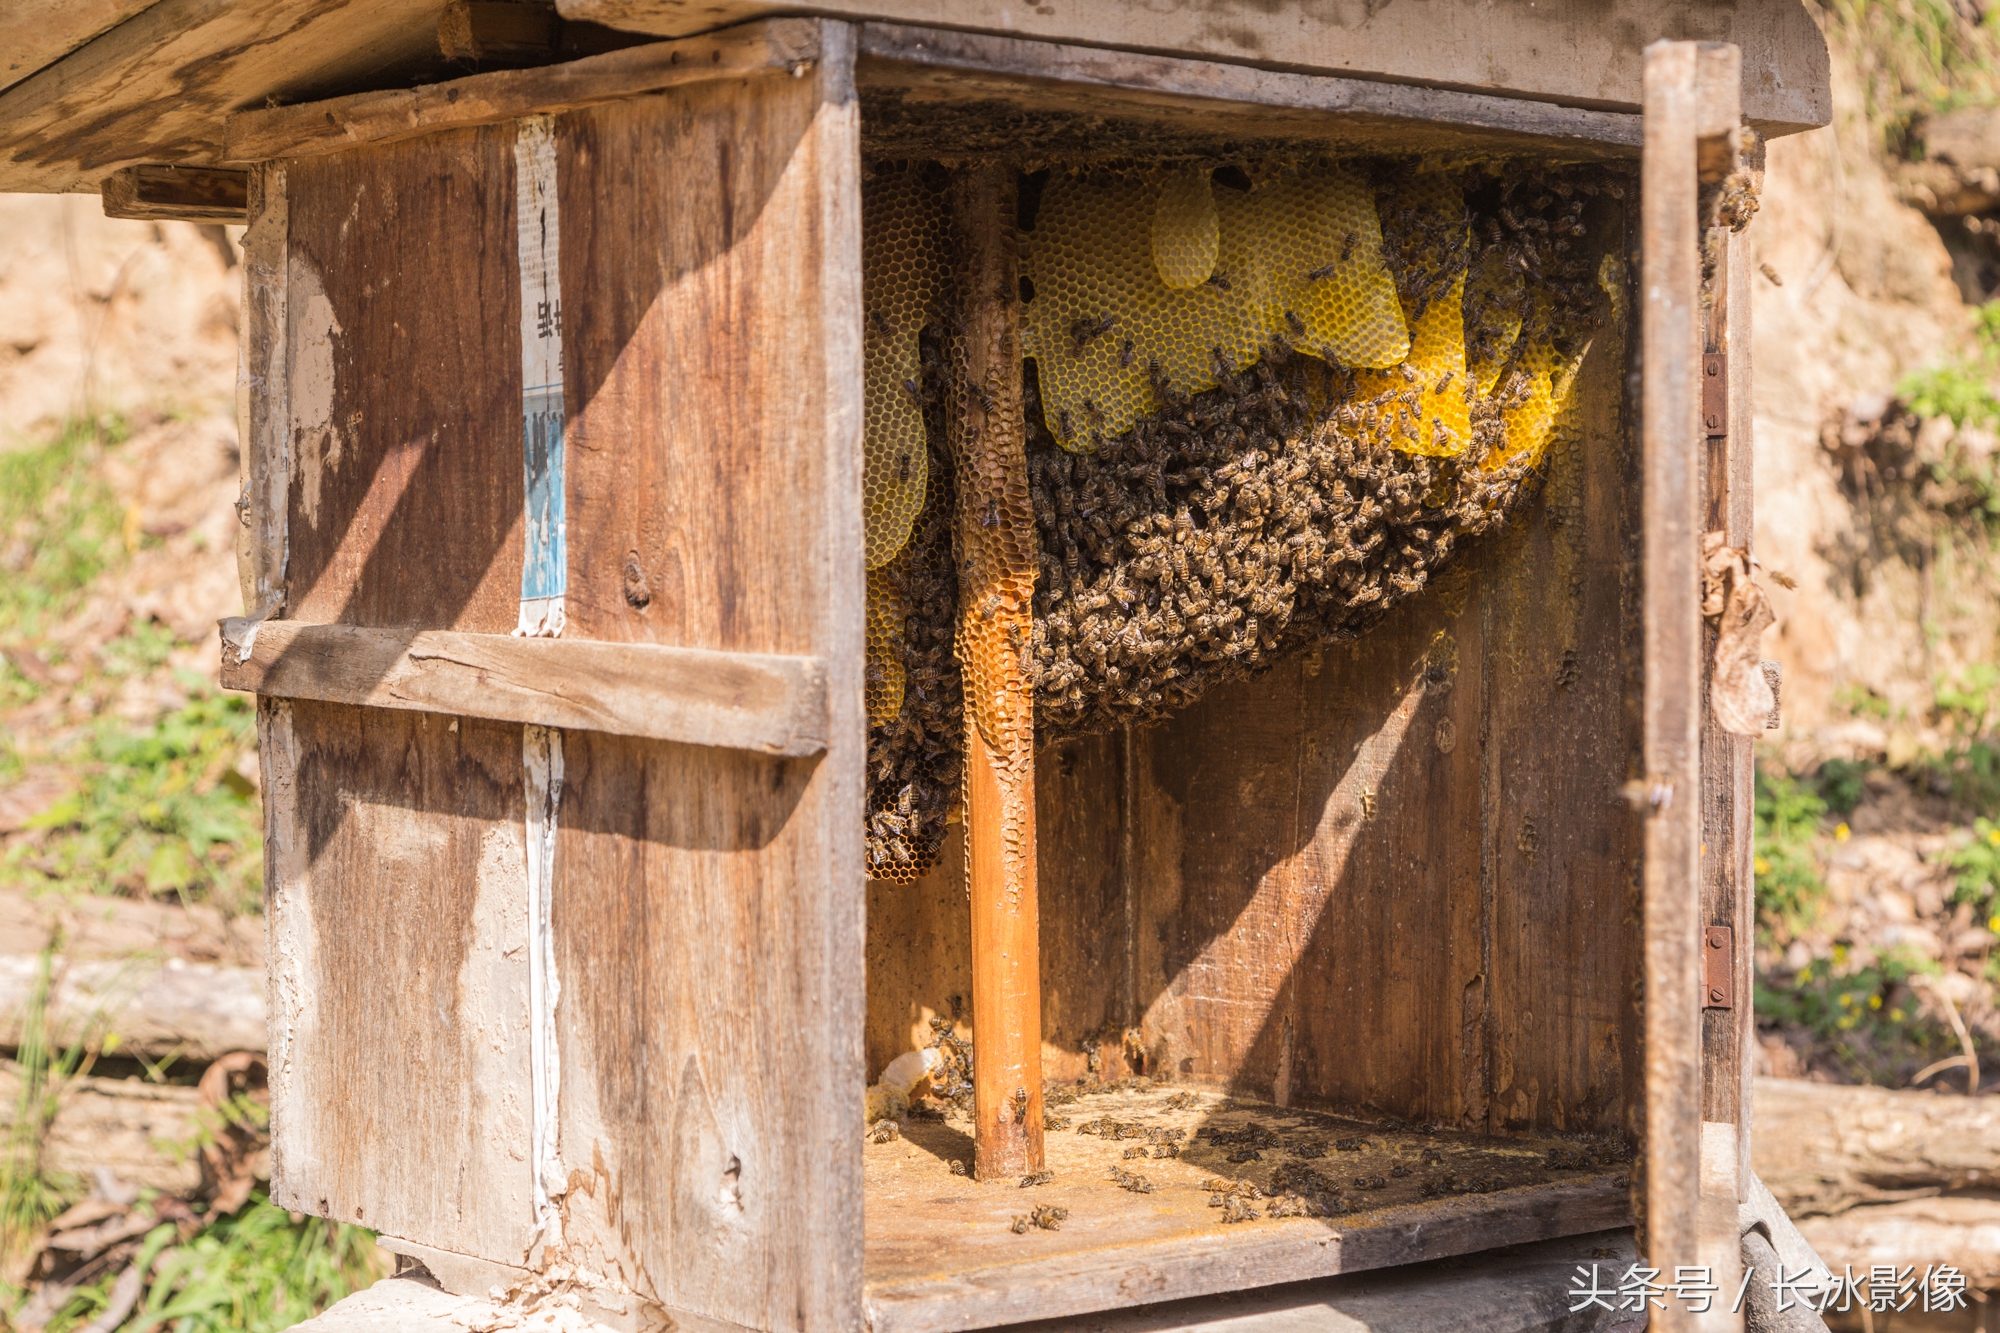 程大叔设置蜂房引诱野蜜蜂入住窑洞墙体上安装蜂房与蜜蜂为邻